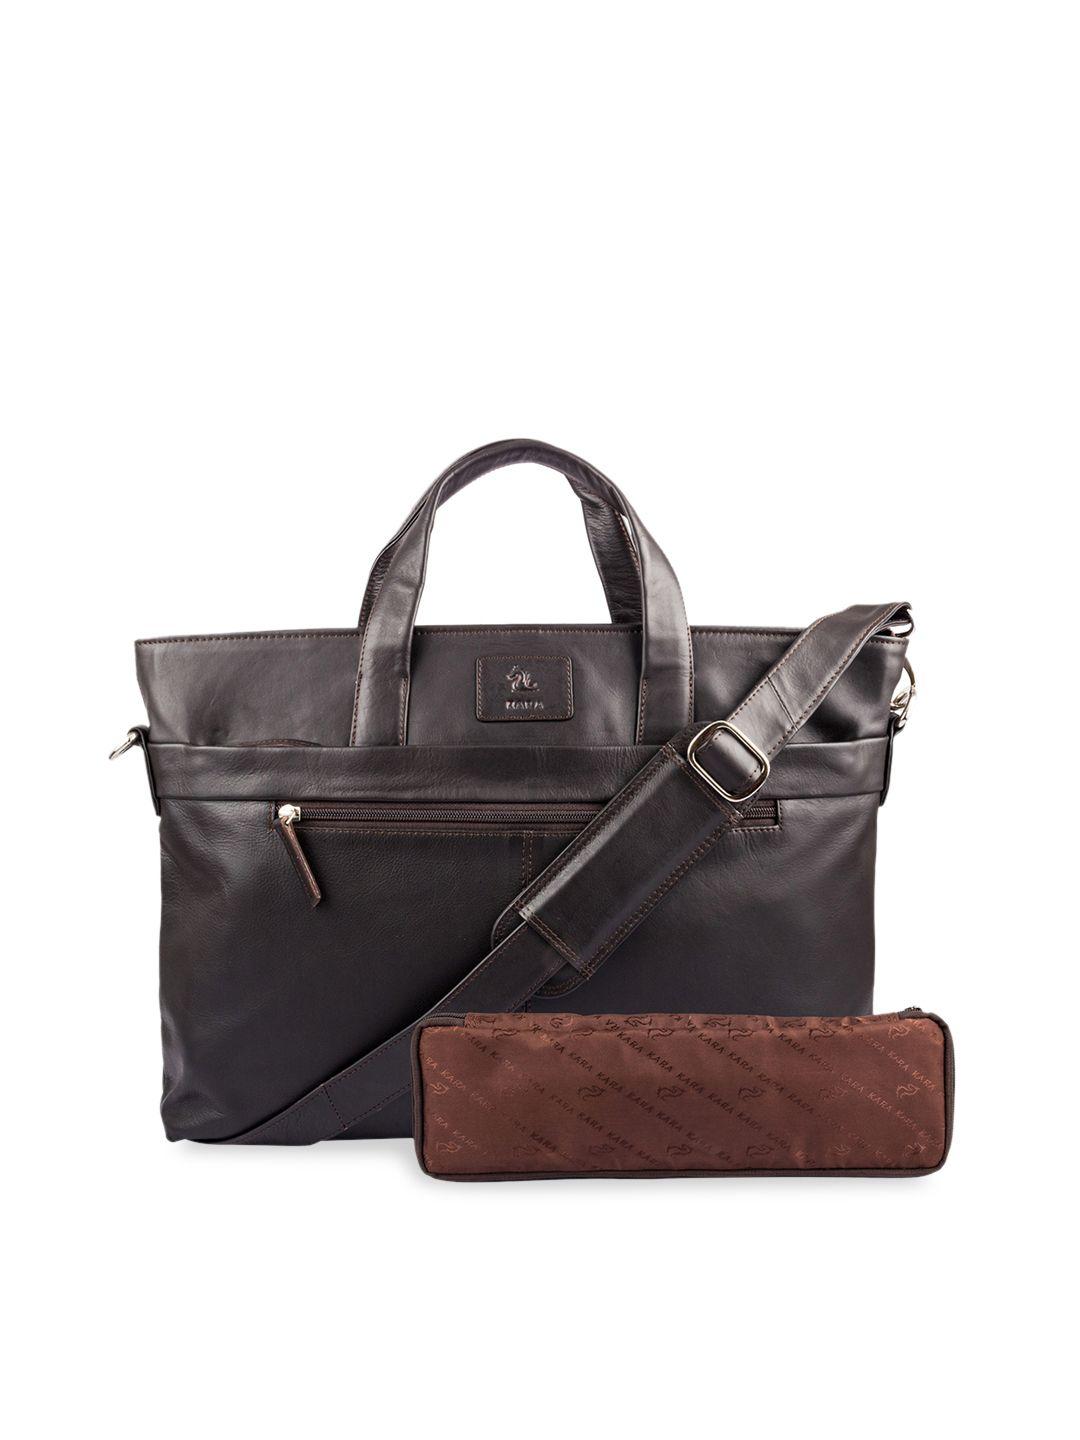 kara brown solid leather handheld bag